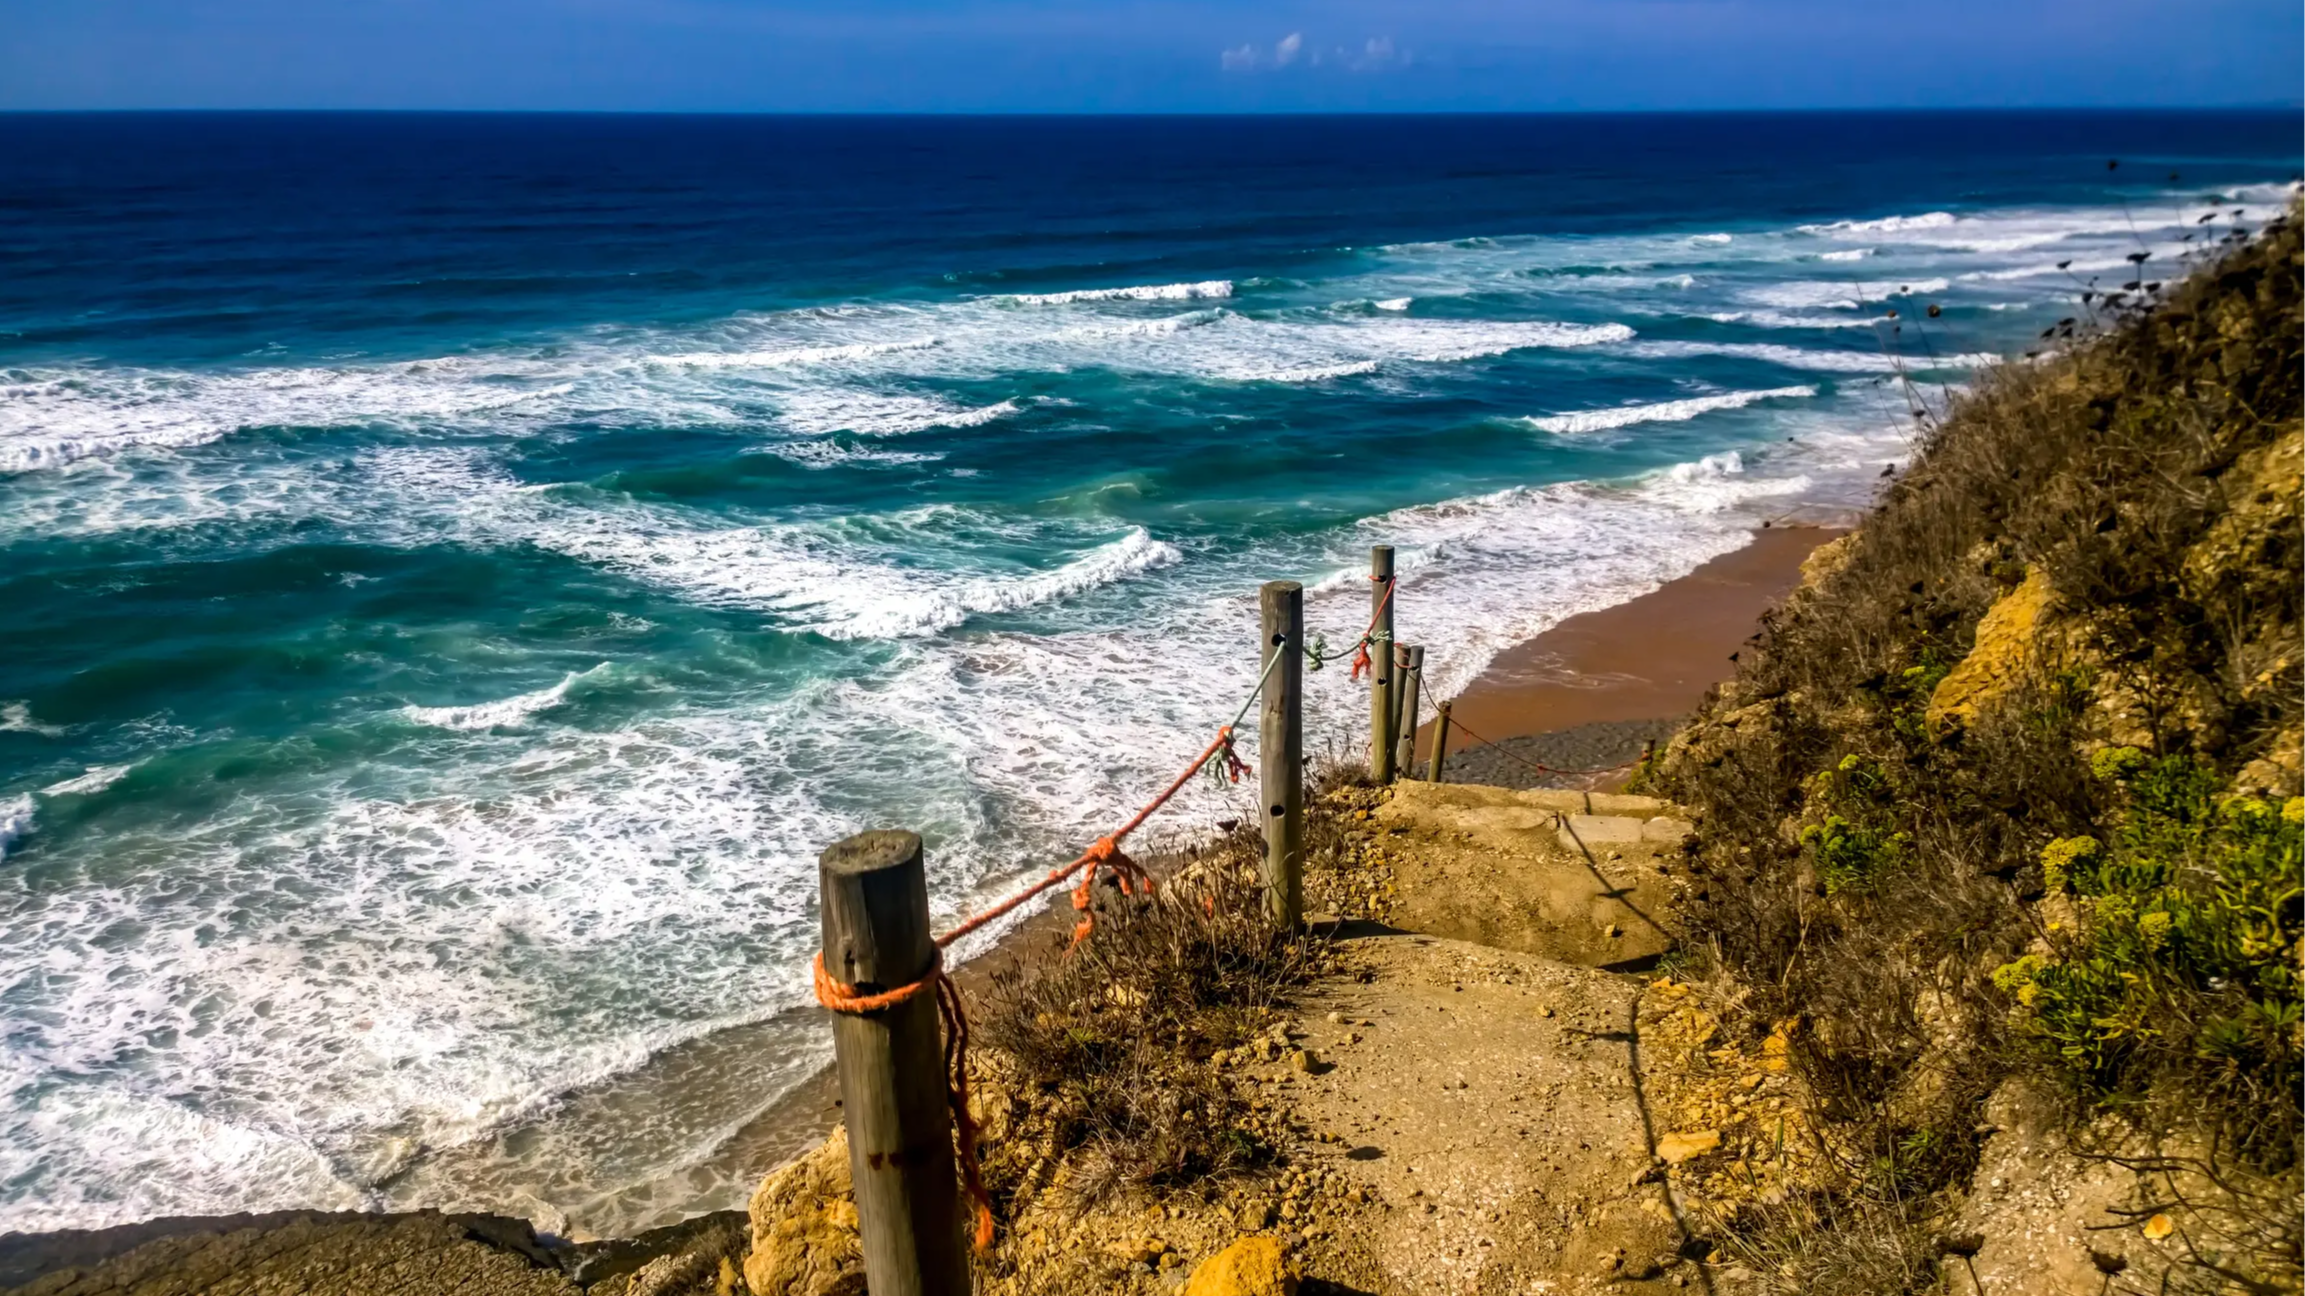 Der Strand Praia Da Aguda, Portugal mit Blick auf einen gesicherten Weg, der an der Klippe entlang führt und mit Aussicht auf das weite blaue Meer.